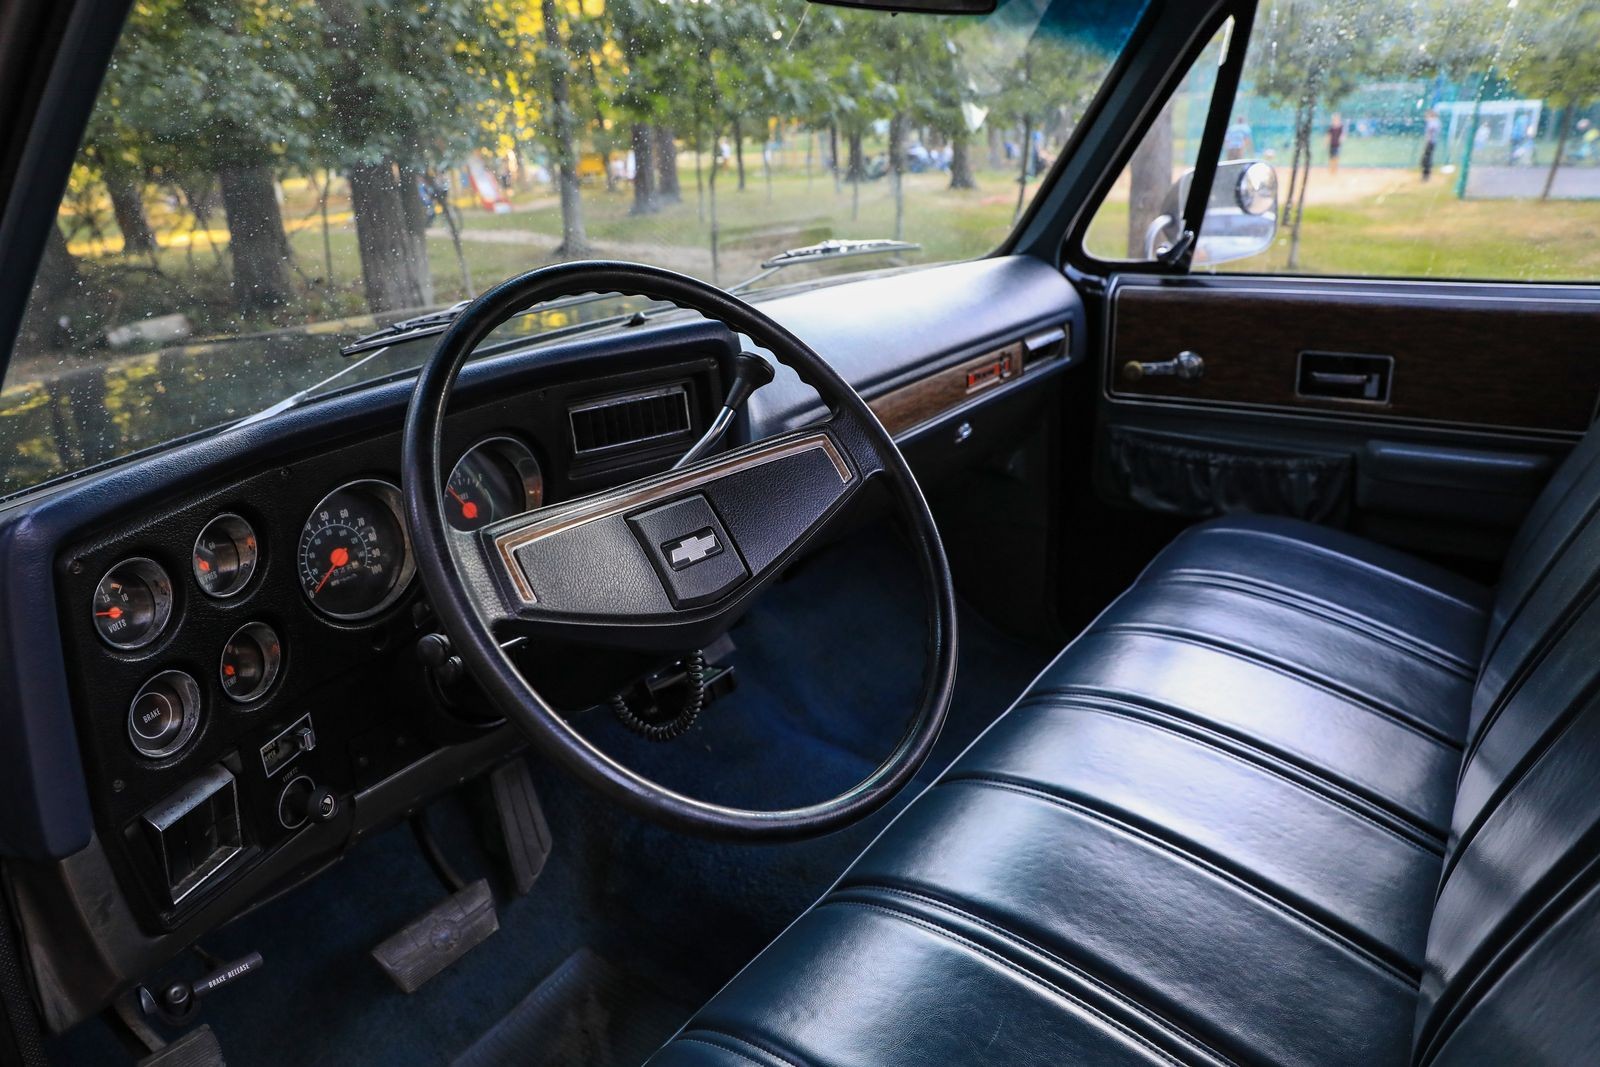 Мотор 7,4 V8, и по грунтовке, как по автобану: опыт владения Chevrolet C-20 Cheyenne 1973